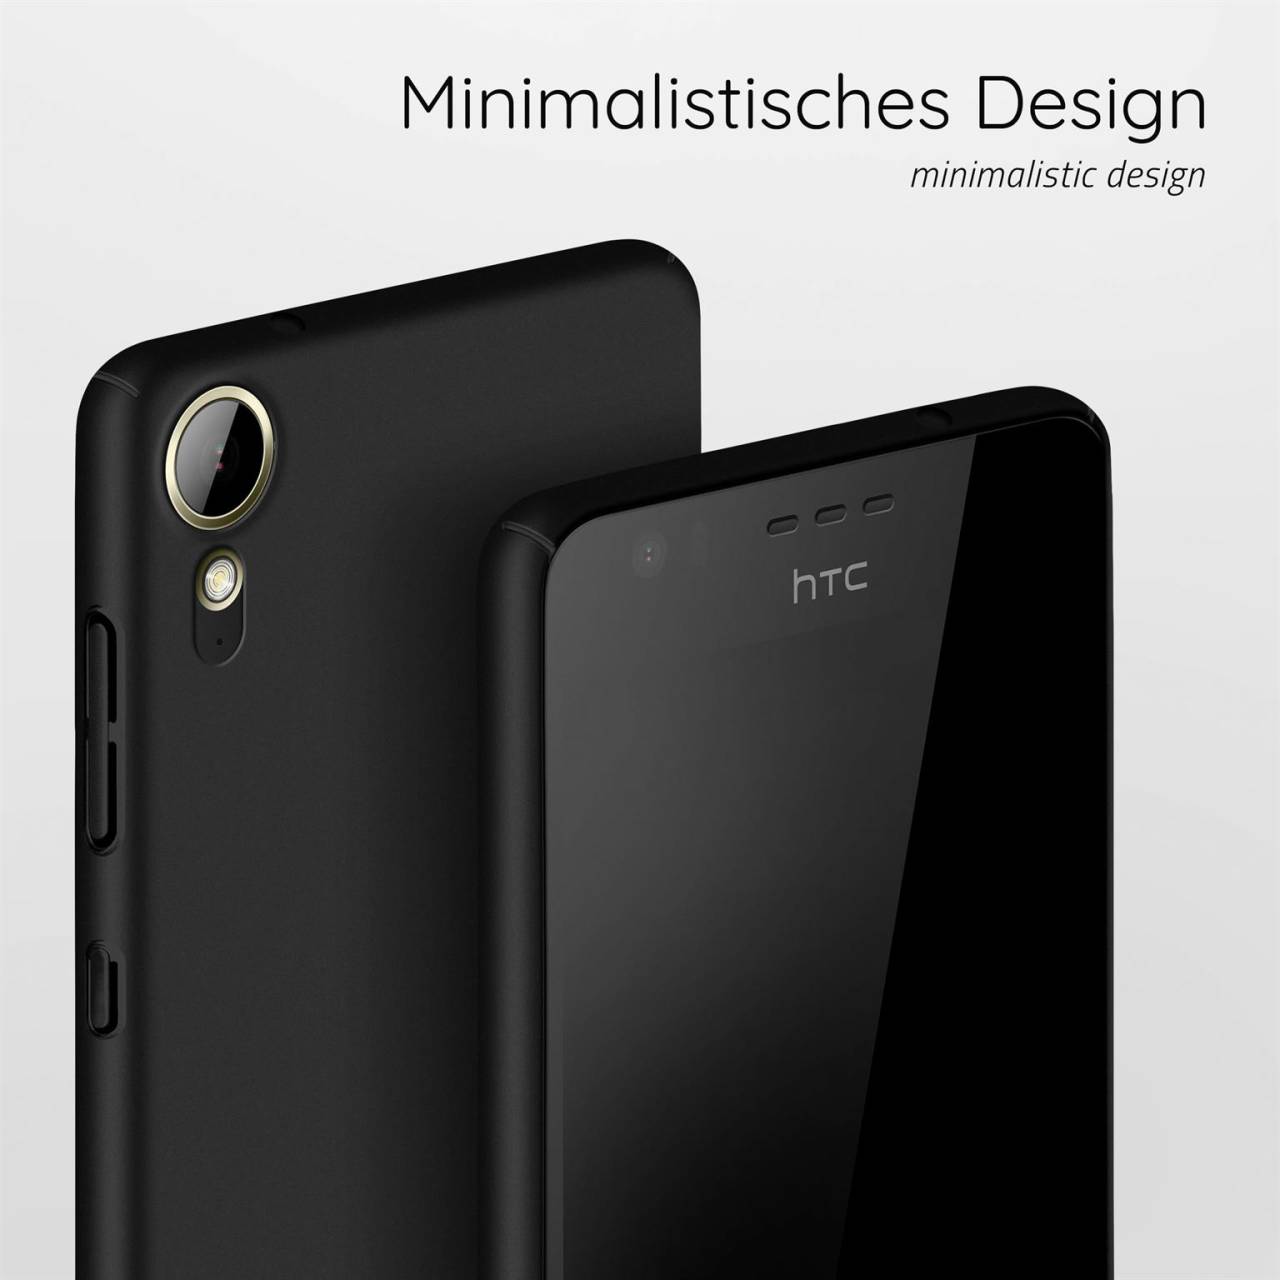 moex Alpha Case für HTC Desire 10 Lifestyle – Extrem dünne, minimalistische Hülle in seidenmatt